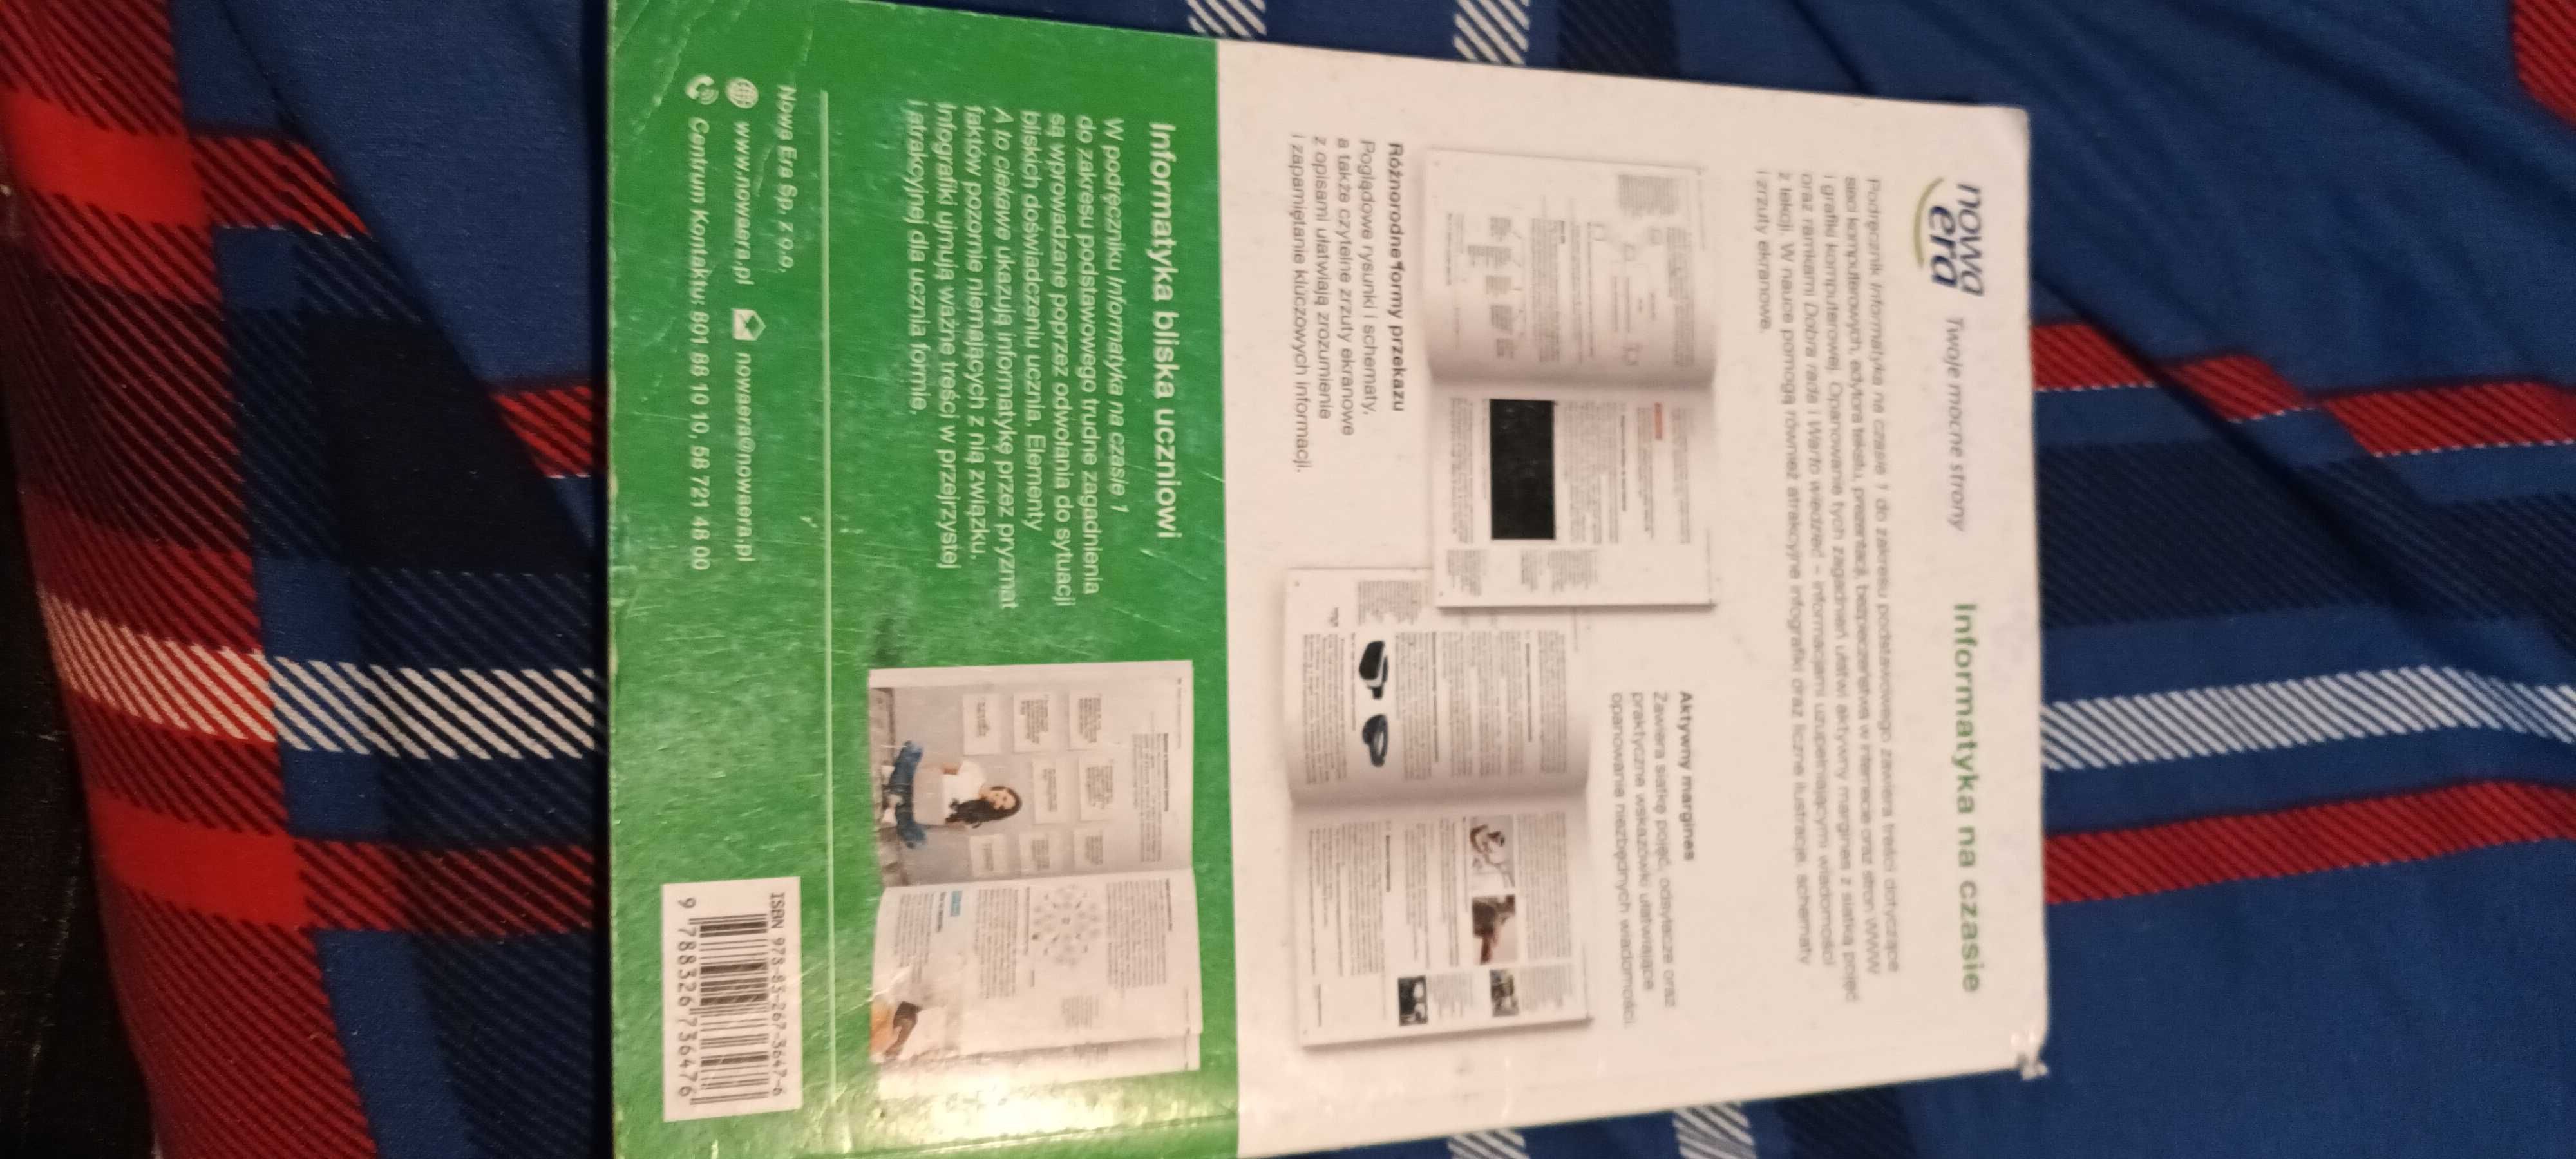 Podręcznik do informatyki  dla klasy 1 tehnikum